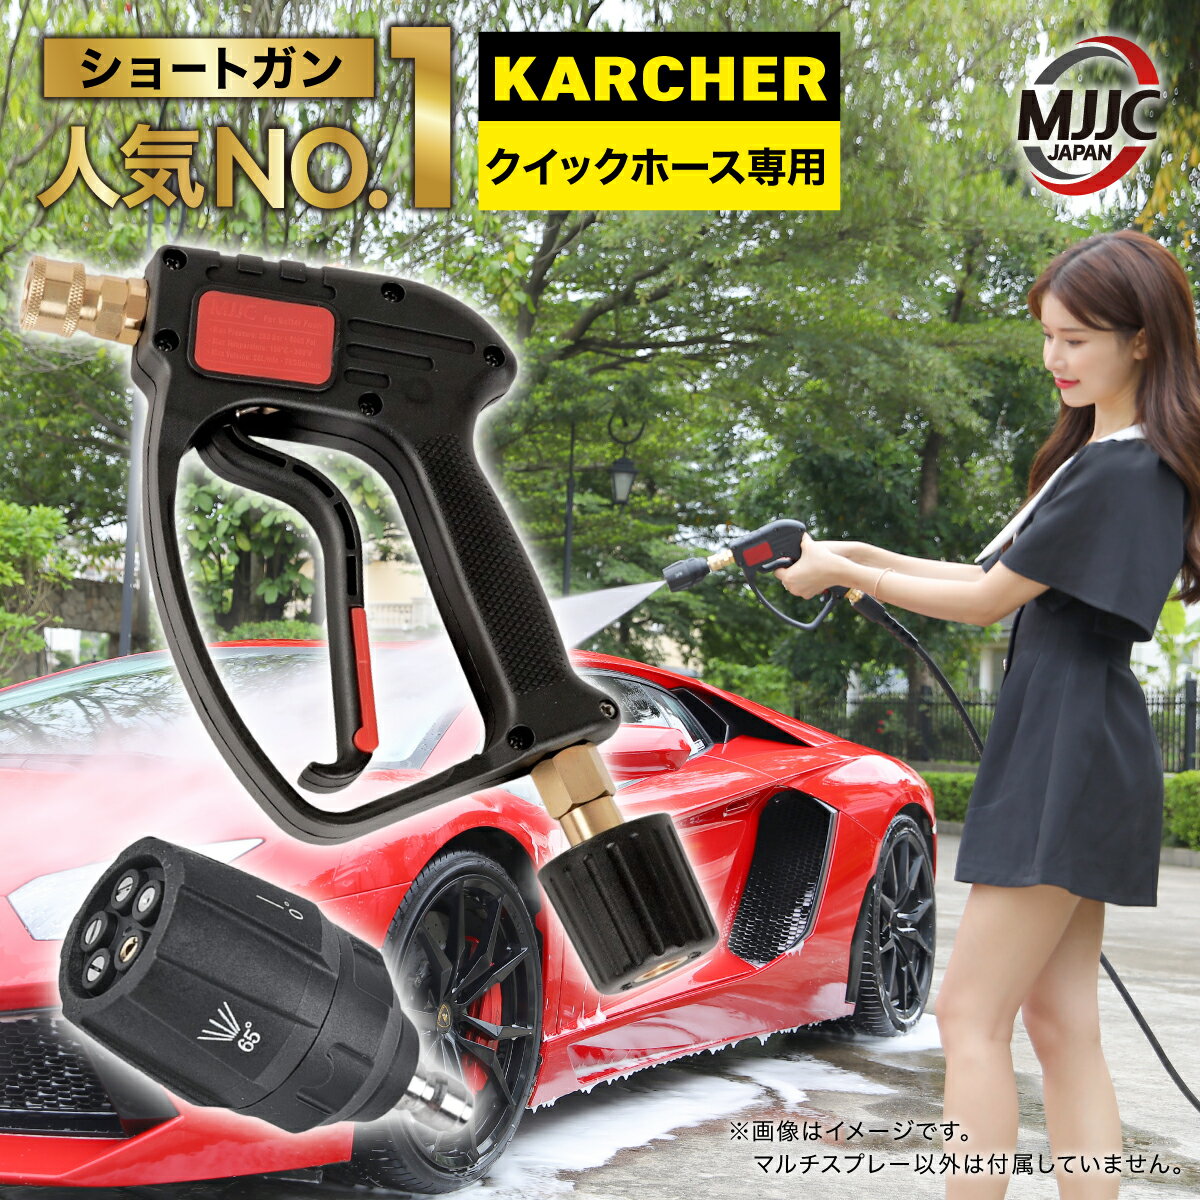 【正規1年保証】 MJJC ショートガンPRO ケルヒャー Kシリーズ クイックコネクト 5段階マルチスプレー コンパクト ス…